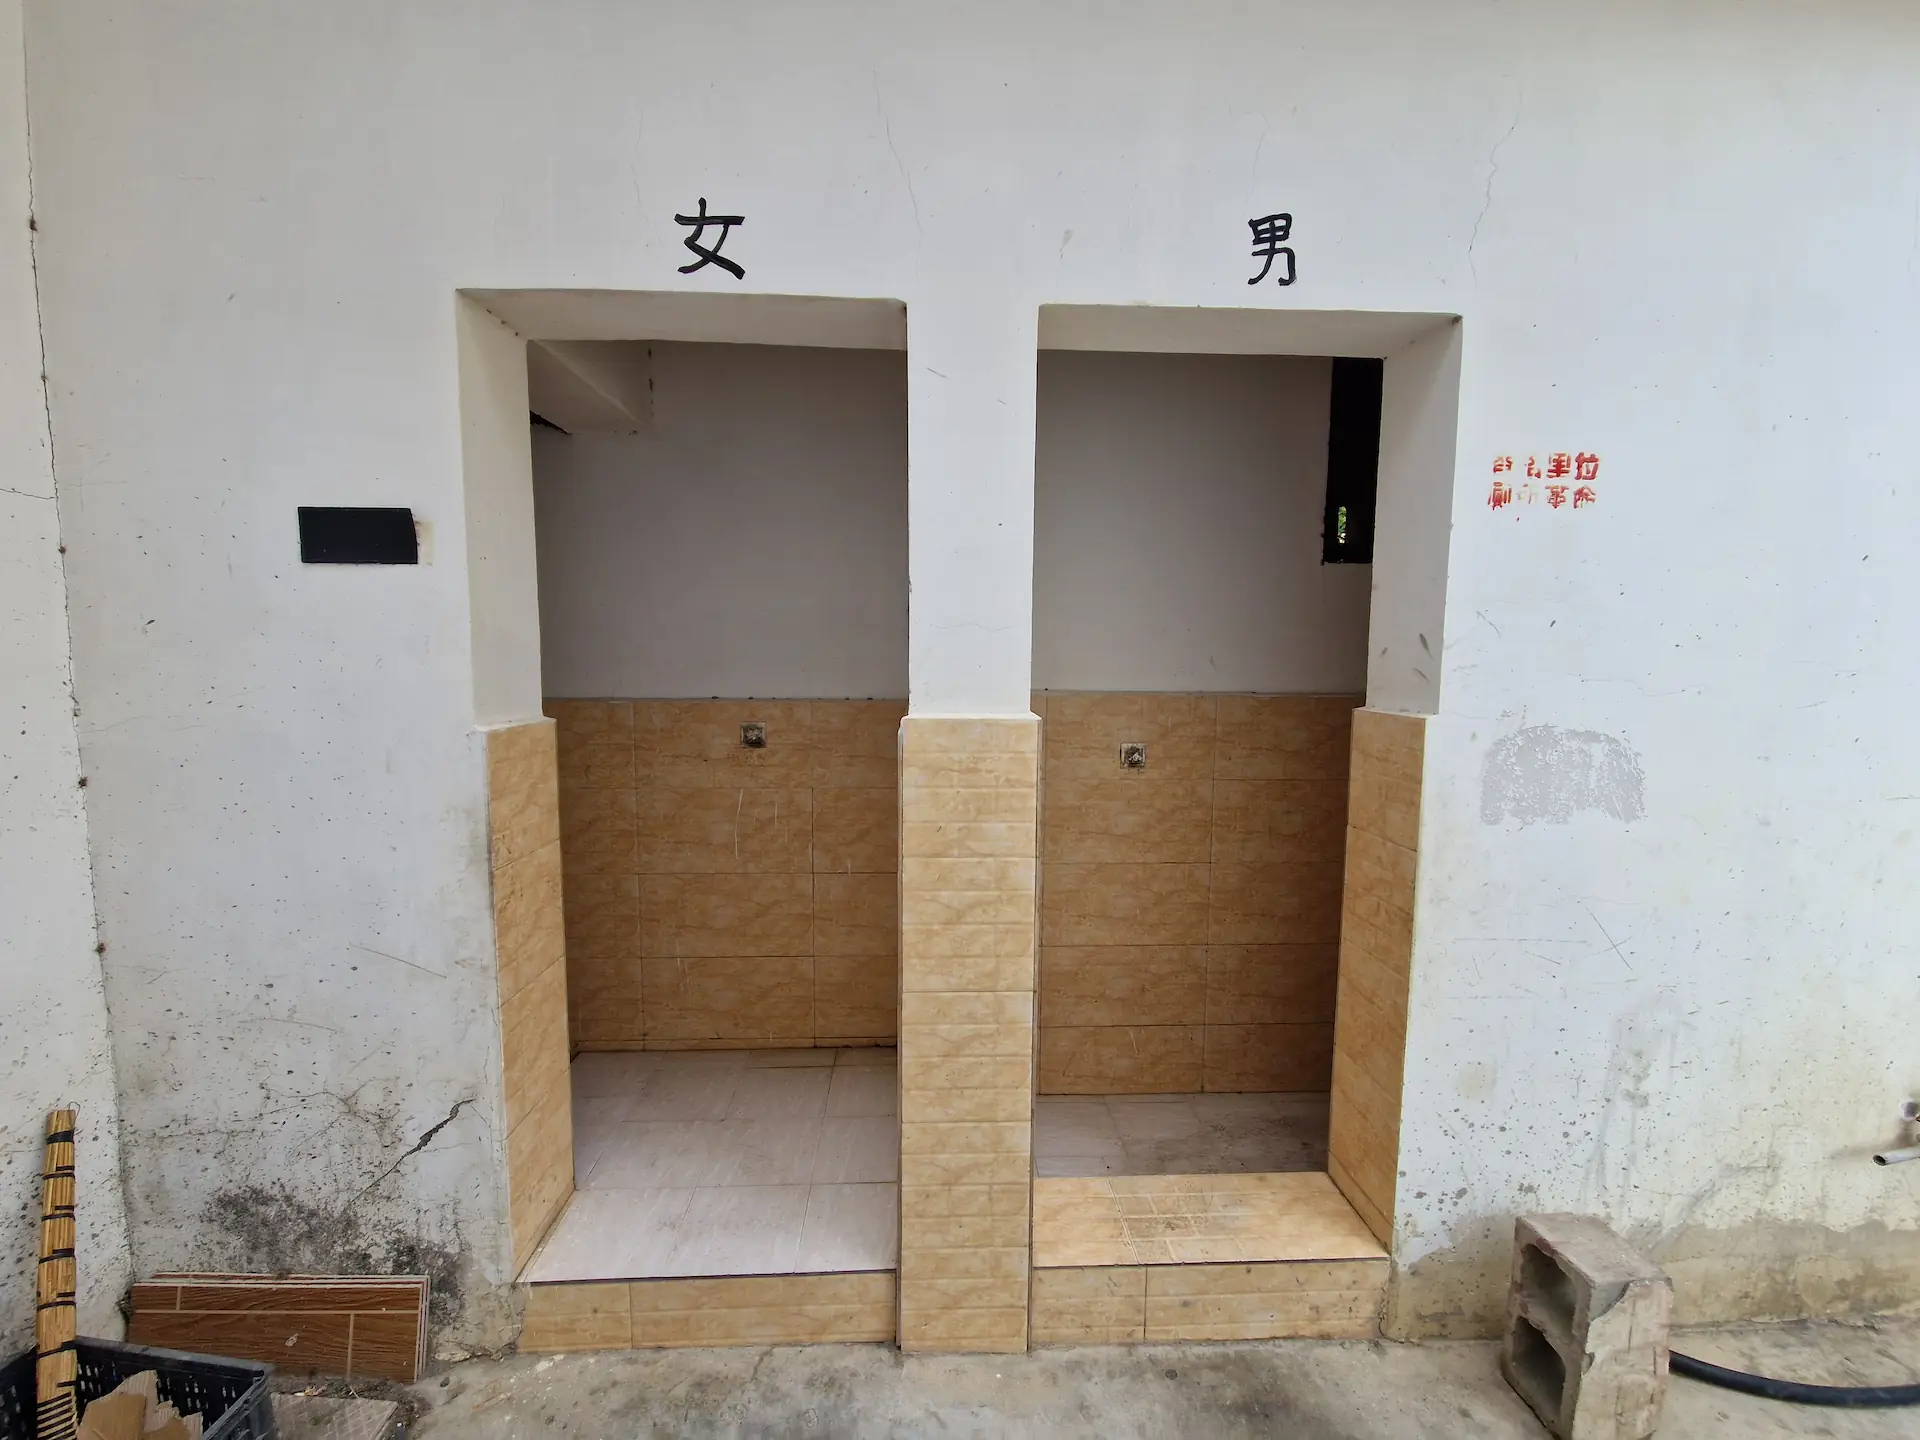 Toilettes publiques, deux portes marquées d'un caractère chinois, homme et femme probablement.